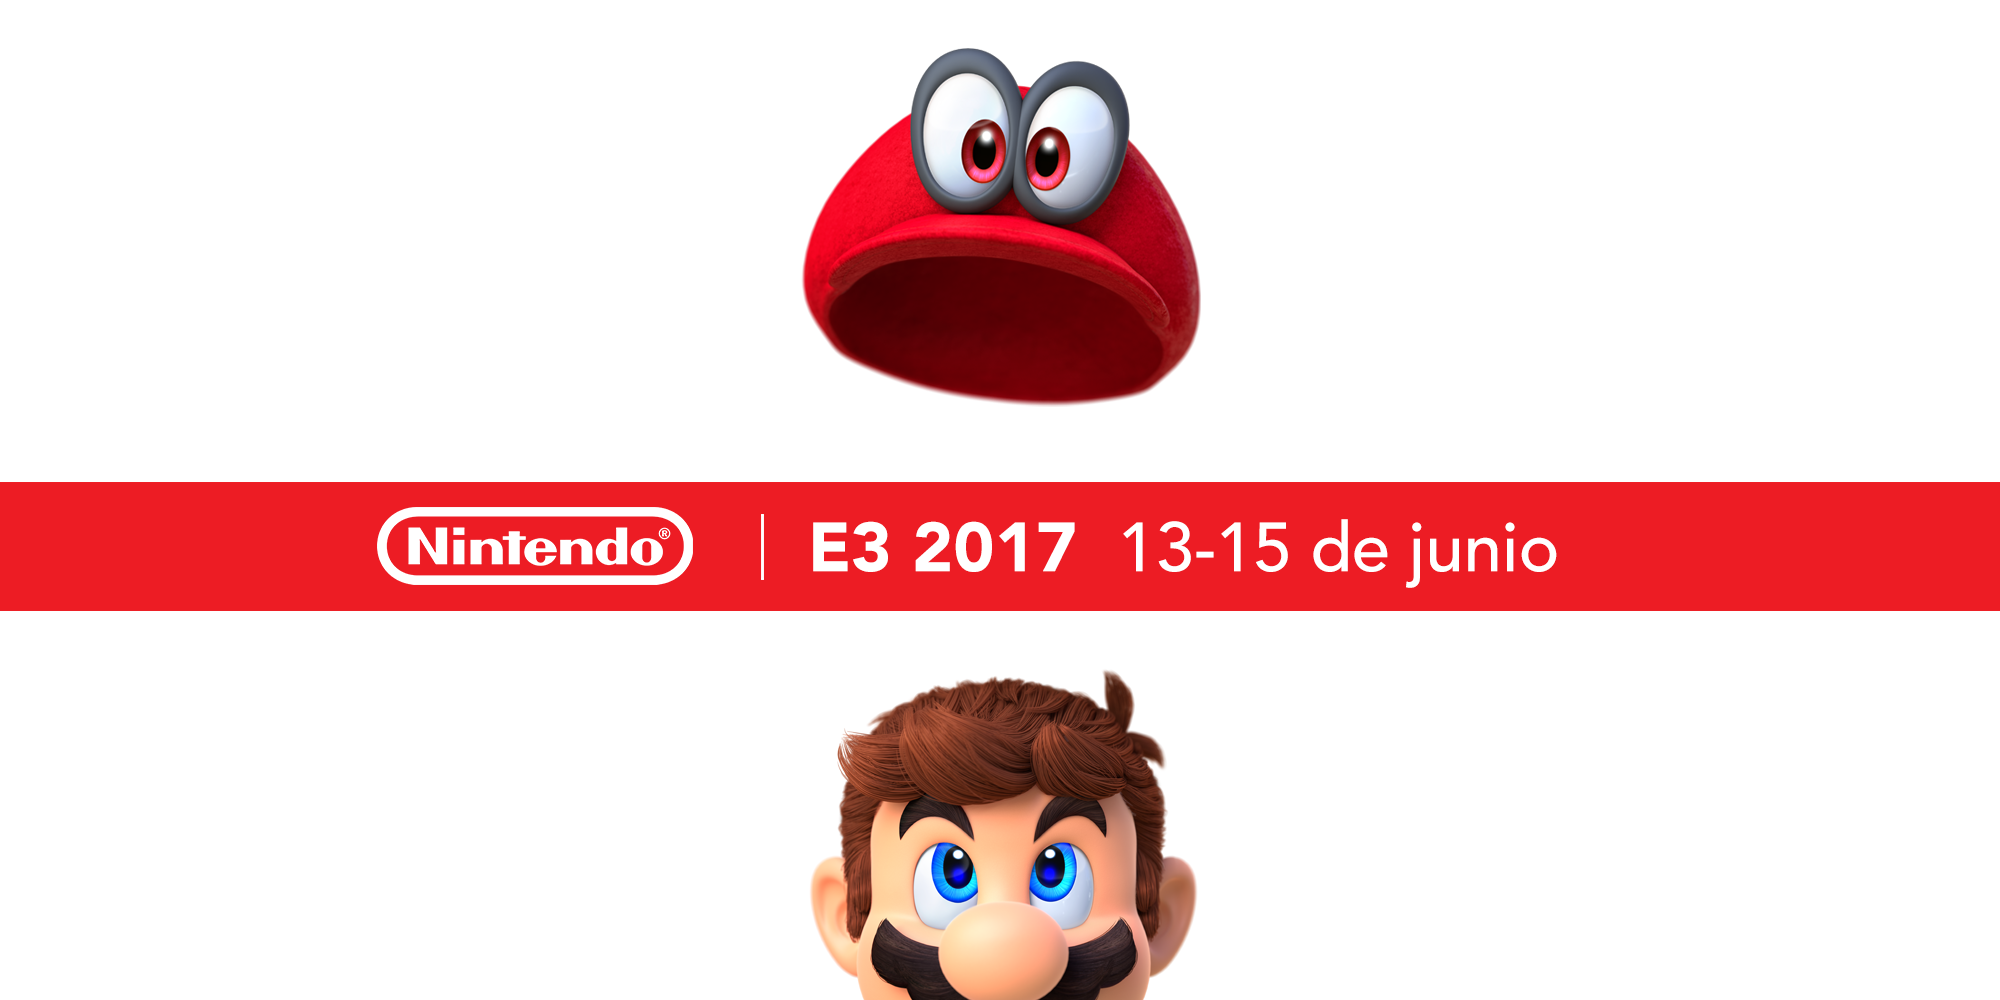 La odisea de Mario comienza este E3 2017